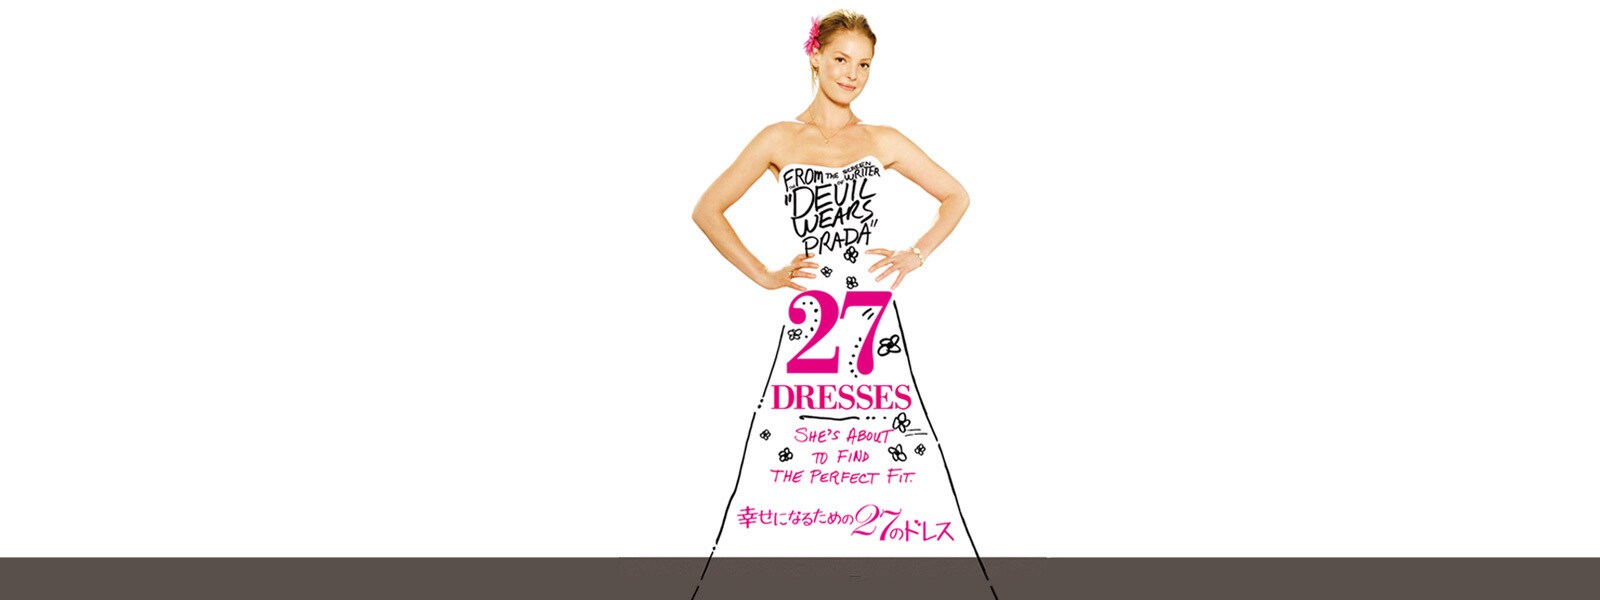 幸せになるための27のドレス｜27-dresses Hero Object 